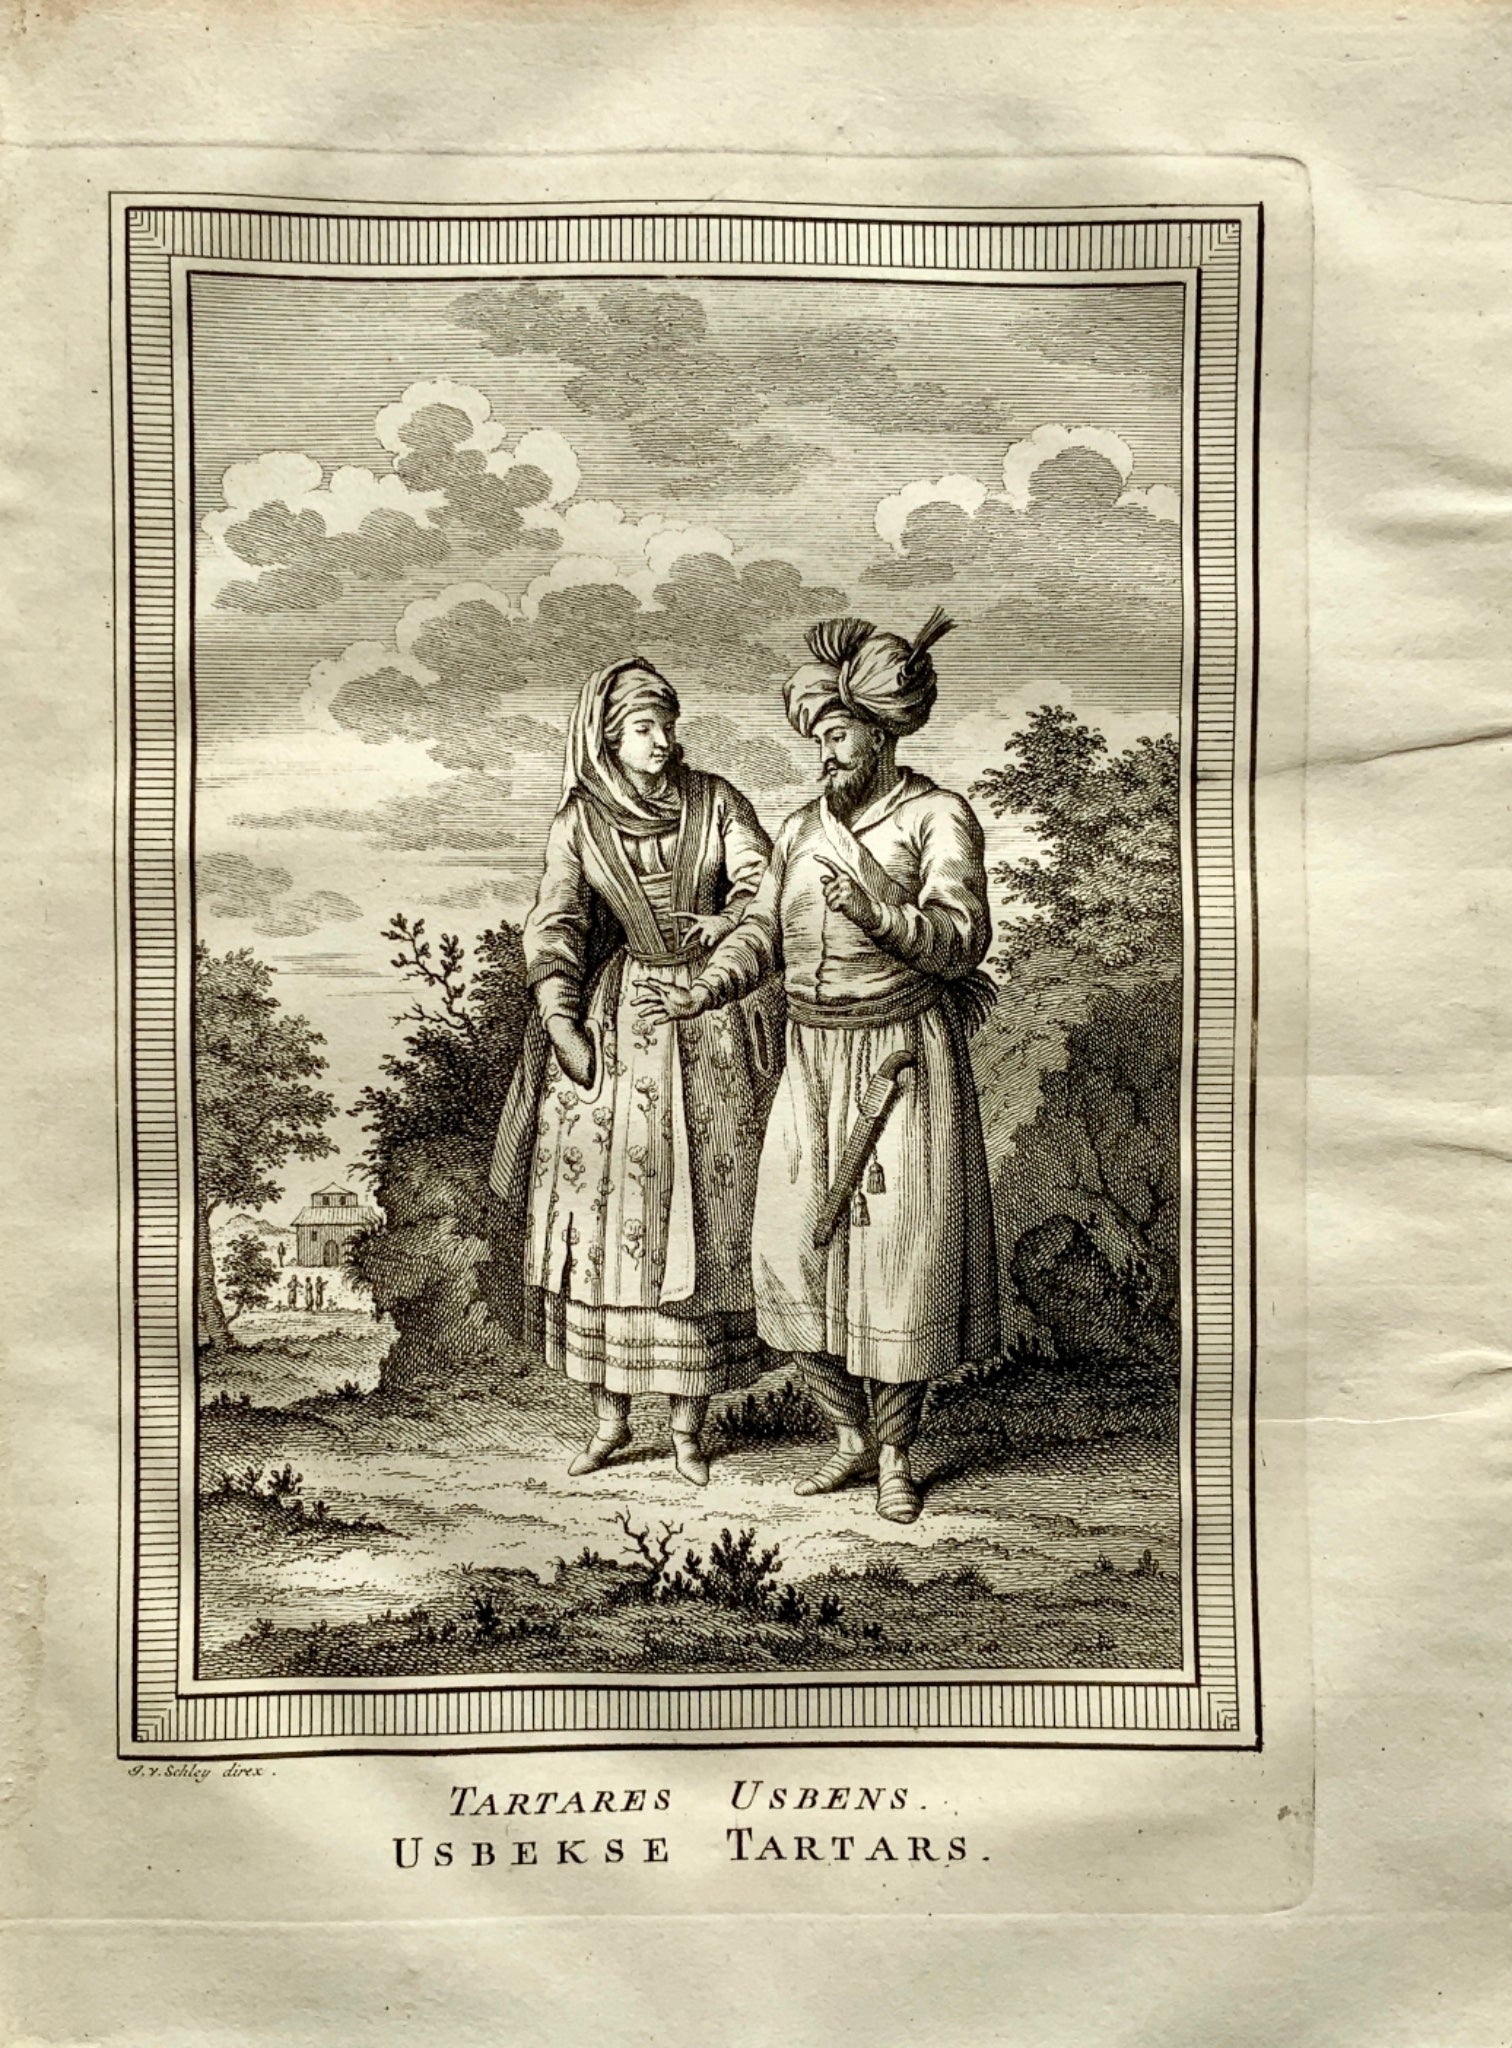 1772 Schley - 'Tartares Usbens'. Uzbekistan. Usbek Tartars. engraving - Travel